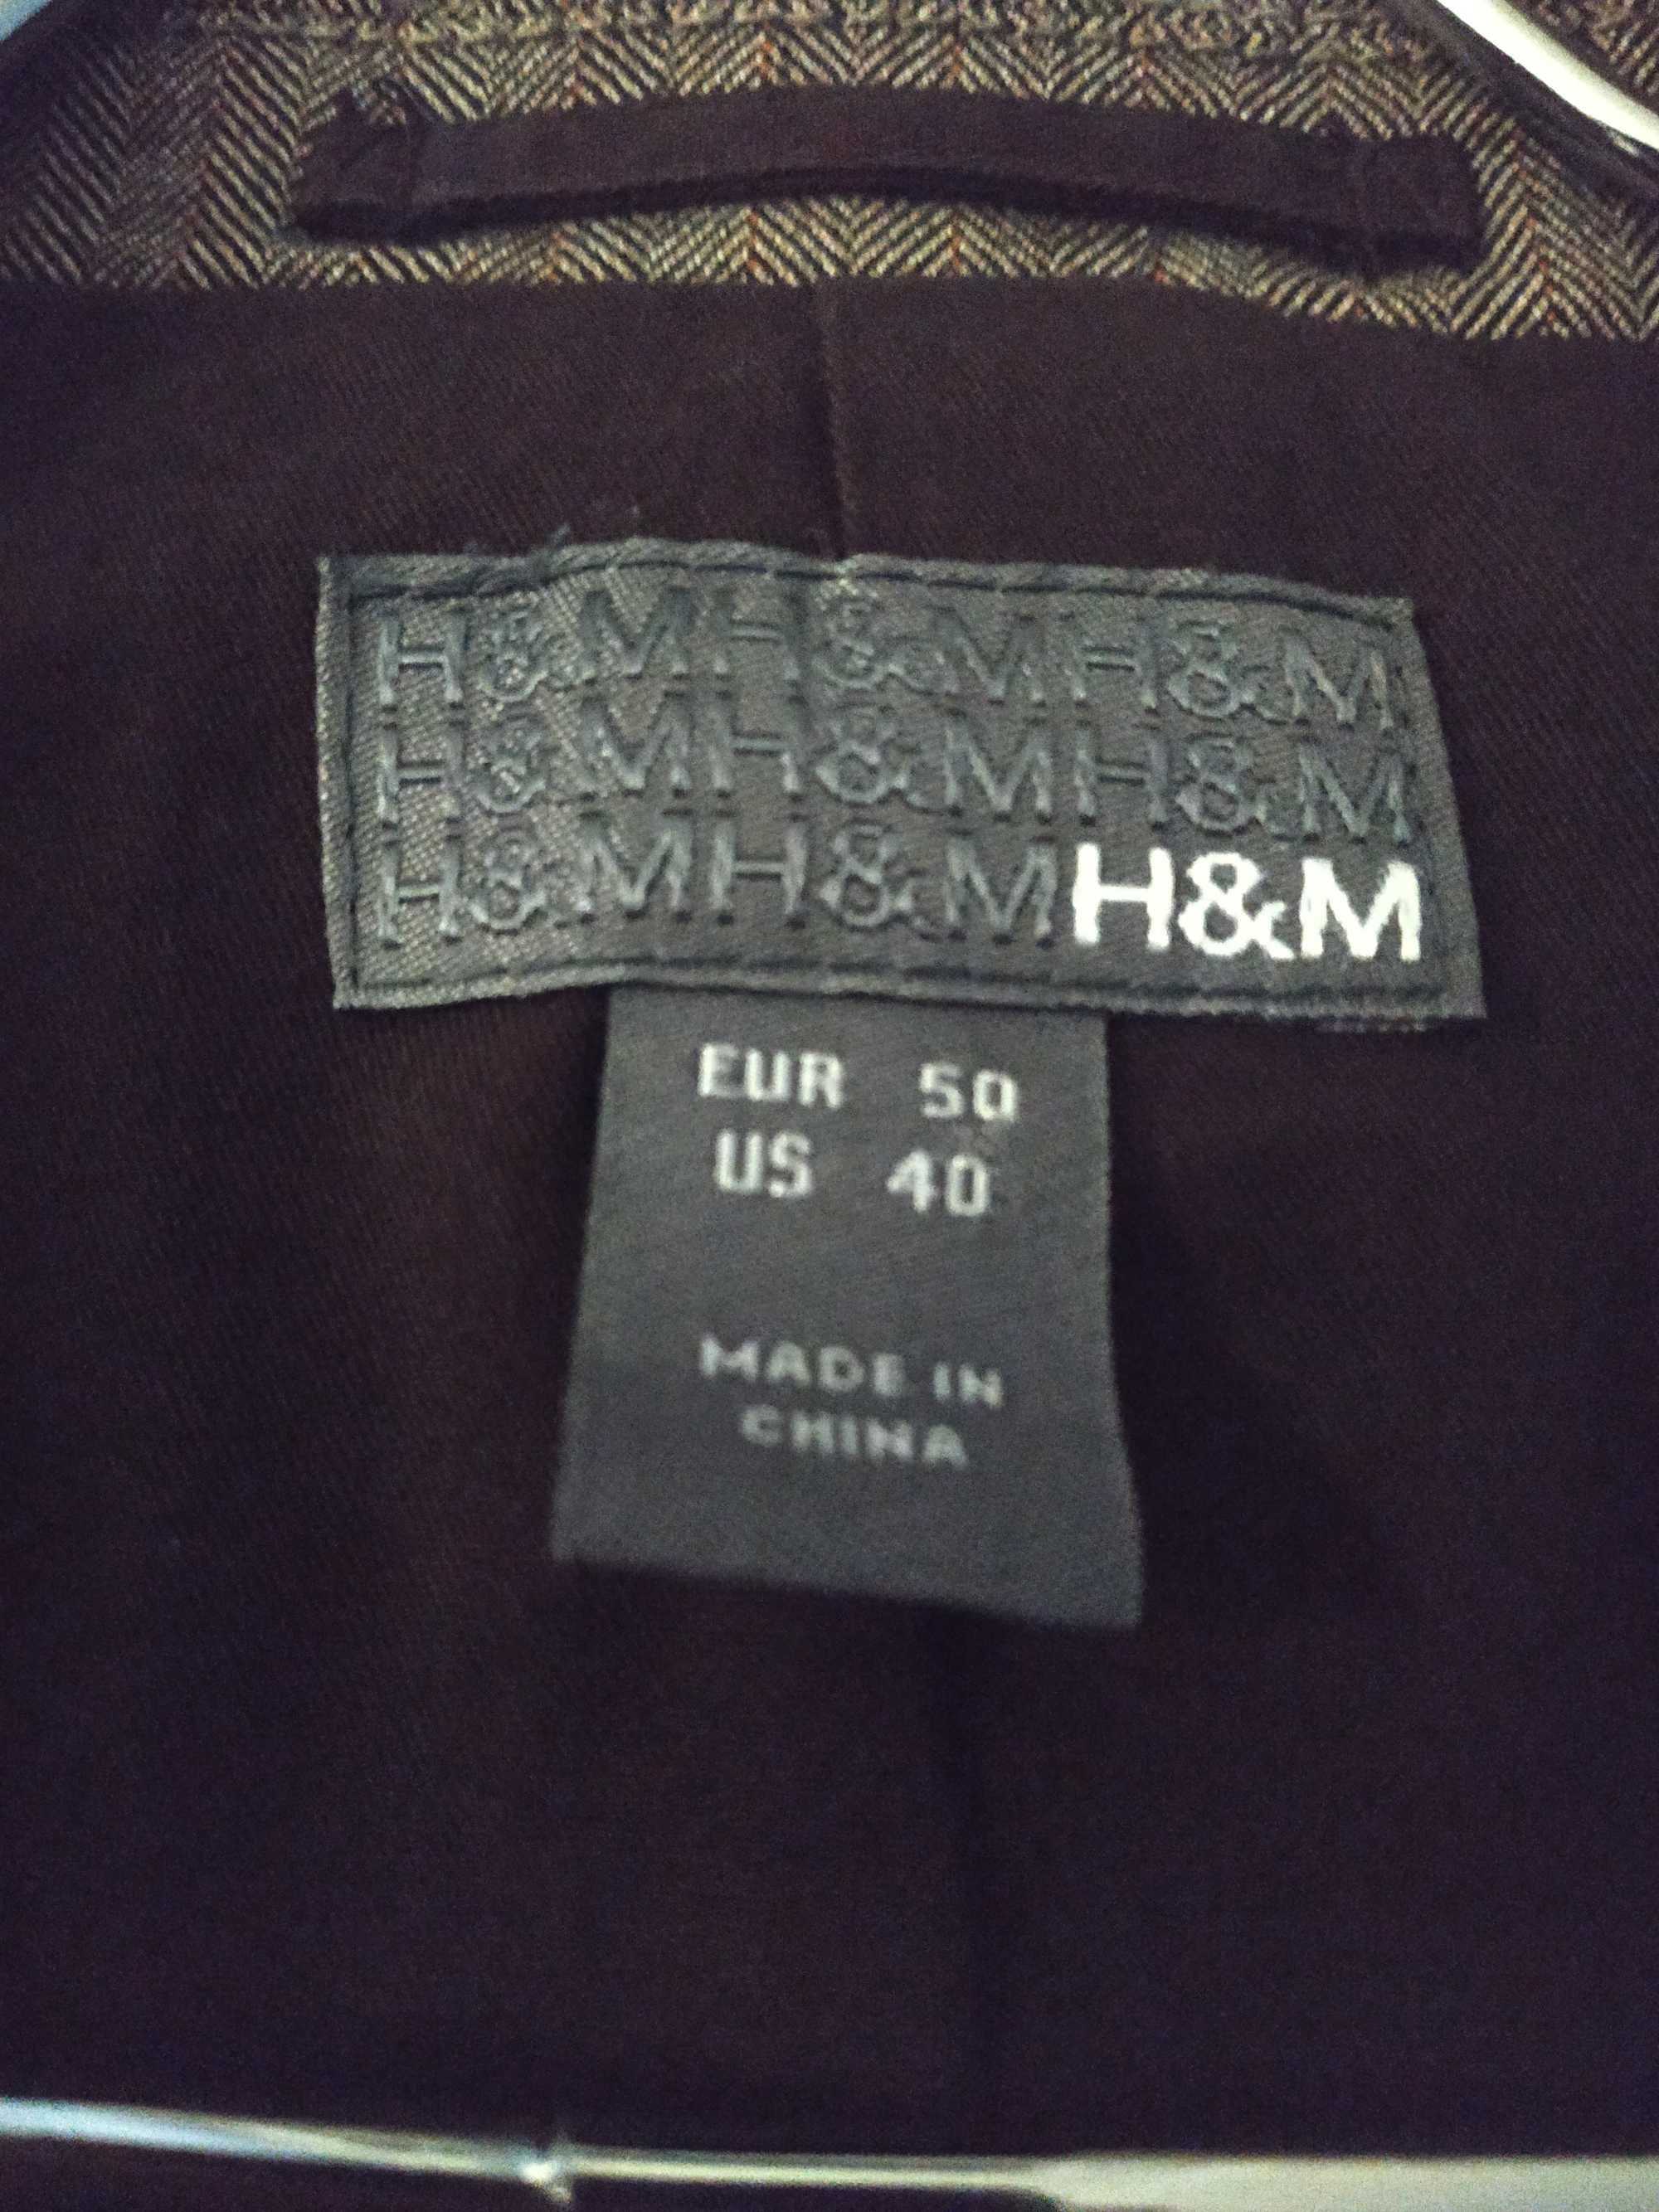 Marynarka męska H&M